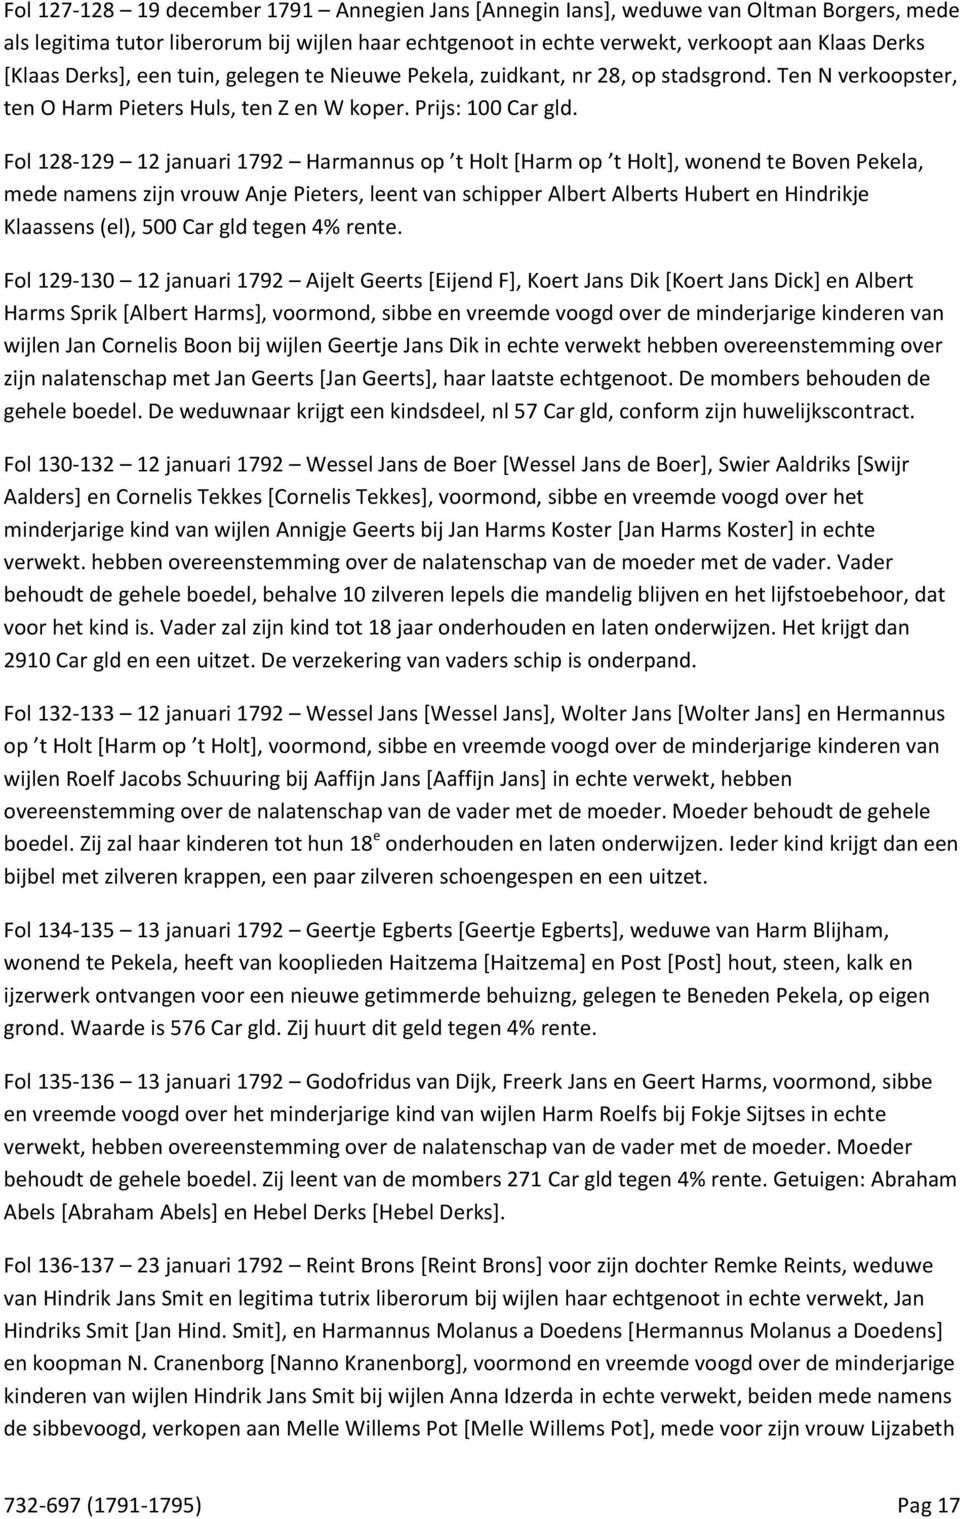 Fol 128-129 12 januari 1792 Harmannus op t Holt [Harm op t Holt], wonend te Boven Pekela, mede namens zijn vrouw Anje Pieters, leent van schipper Albert Alberts Hubert en Hindrikje Klaassens (el),